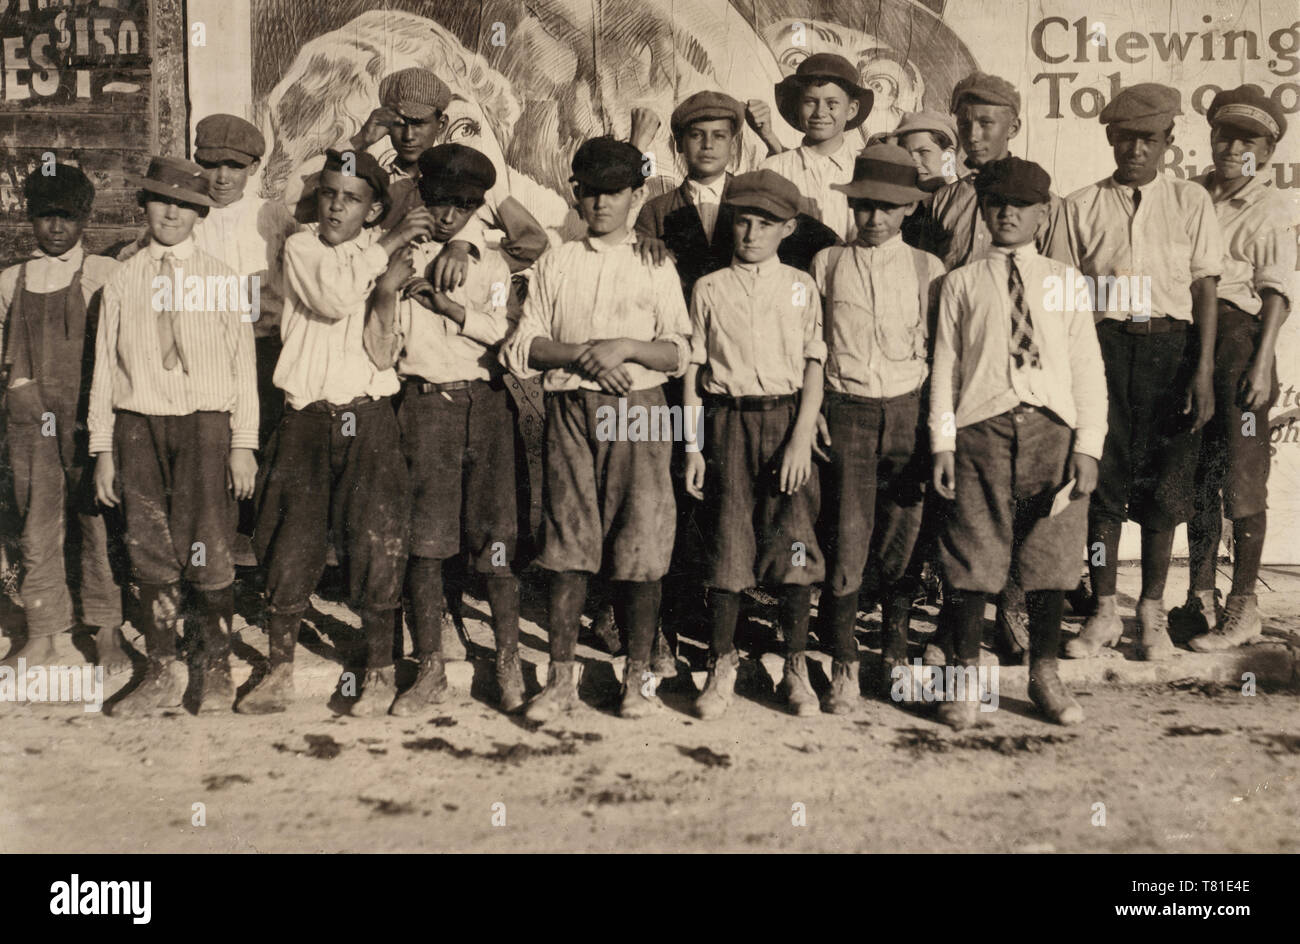 Ein paar der San Antonio boten. Siehe Hine Bericht über Messenger Service von Texas. Edgar Barnes ist eines der kleinsten der vorderen Zylinderreihe. Die boten und deren Kontakt mit dem Rotlichtviertel, in den meisten der großen Städte von Texas, ist eine der schlimmsten Phasen der Kinderarbeit in den Staat. Ort: San Antonio, Texas. 1913 Stockfoto